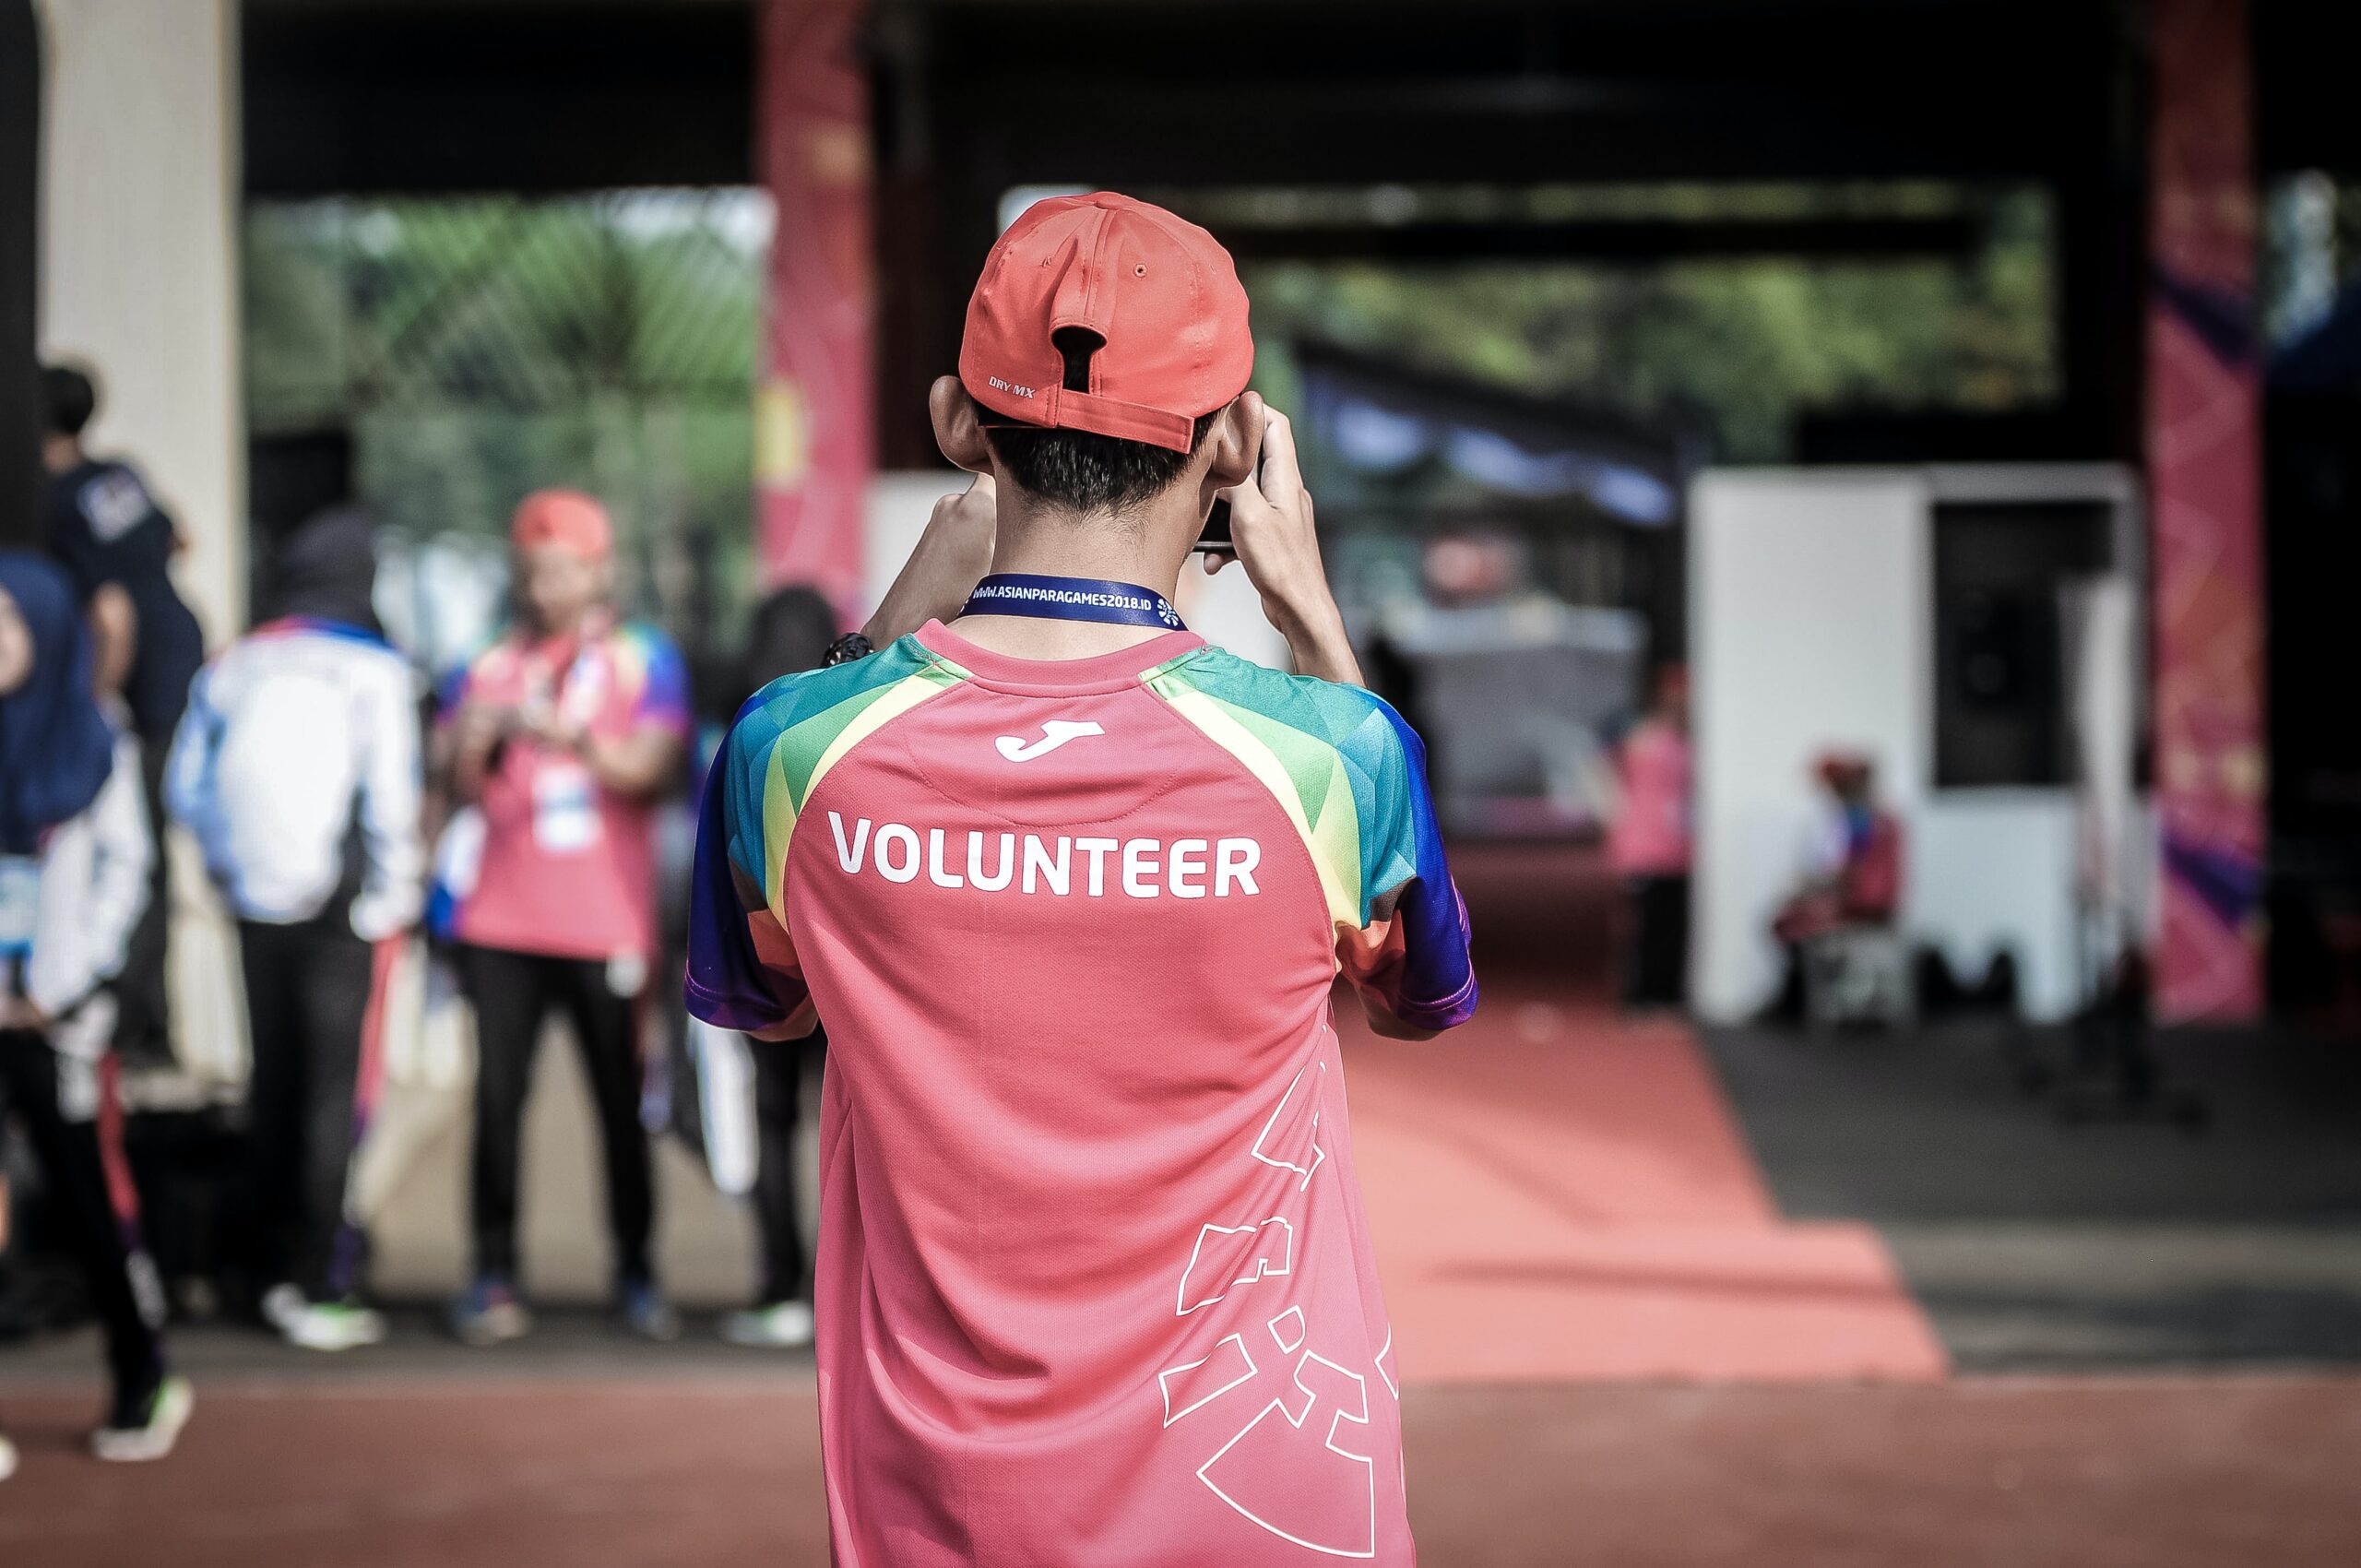 Volunteer standing